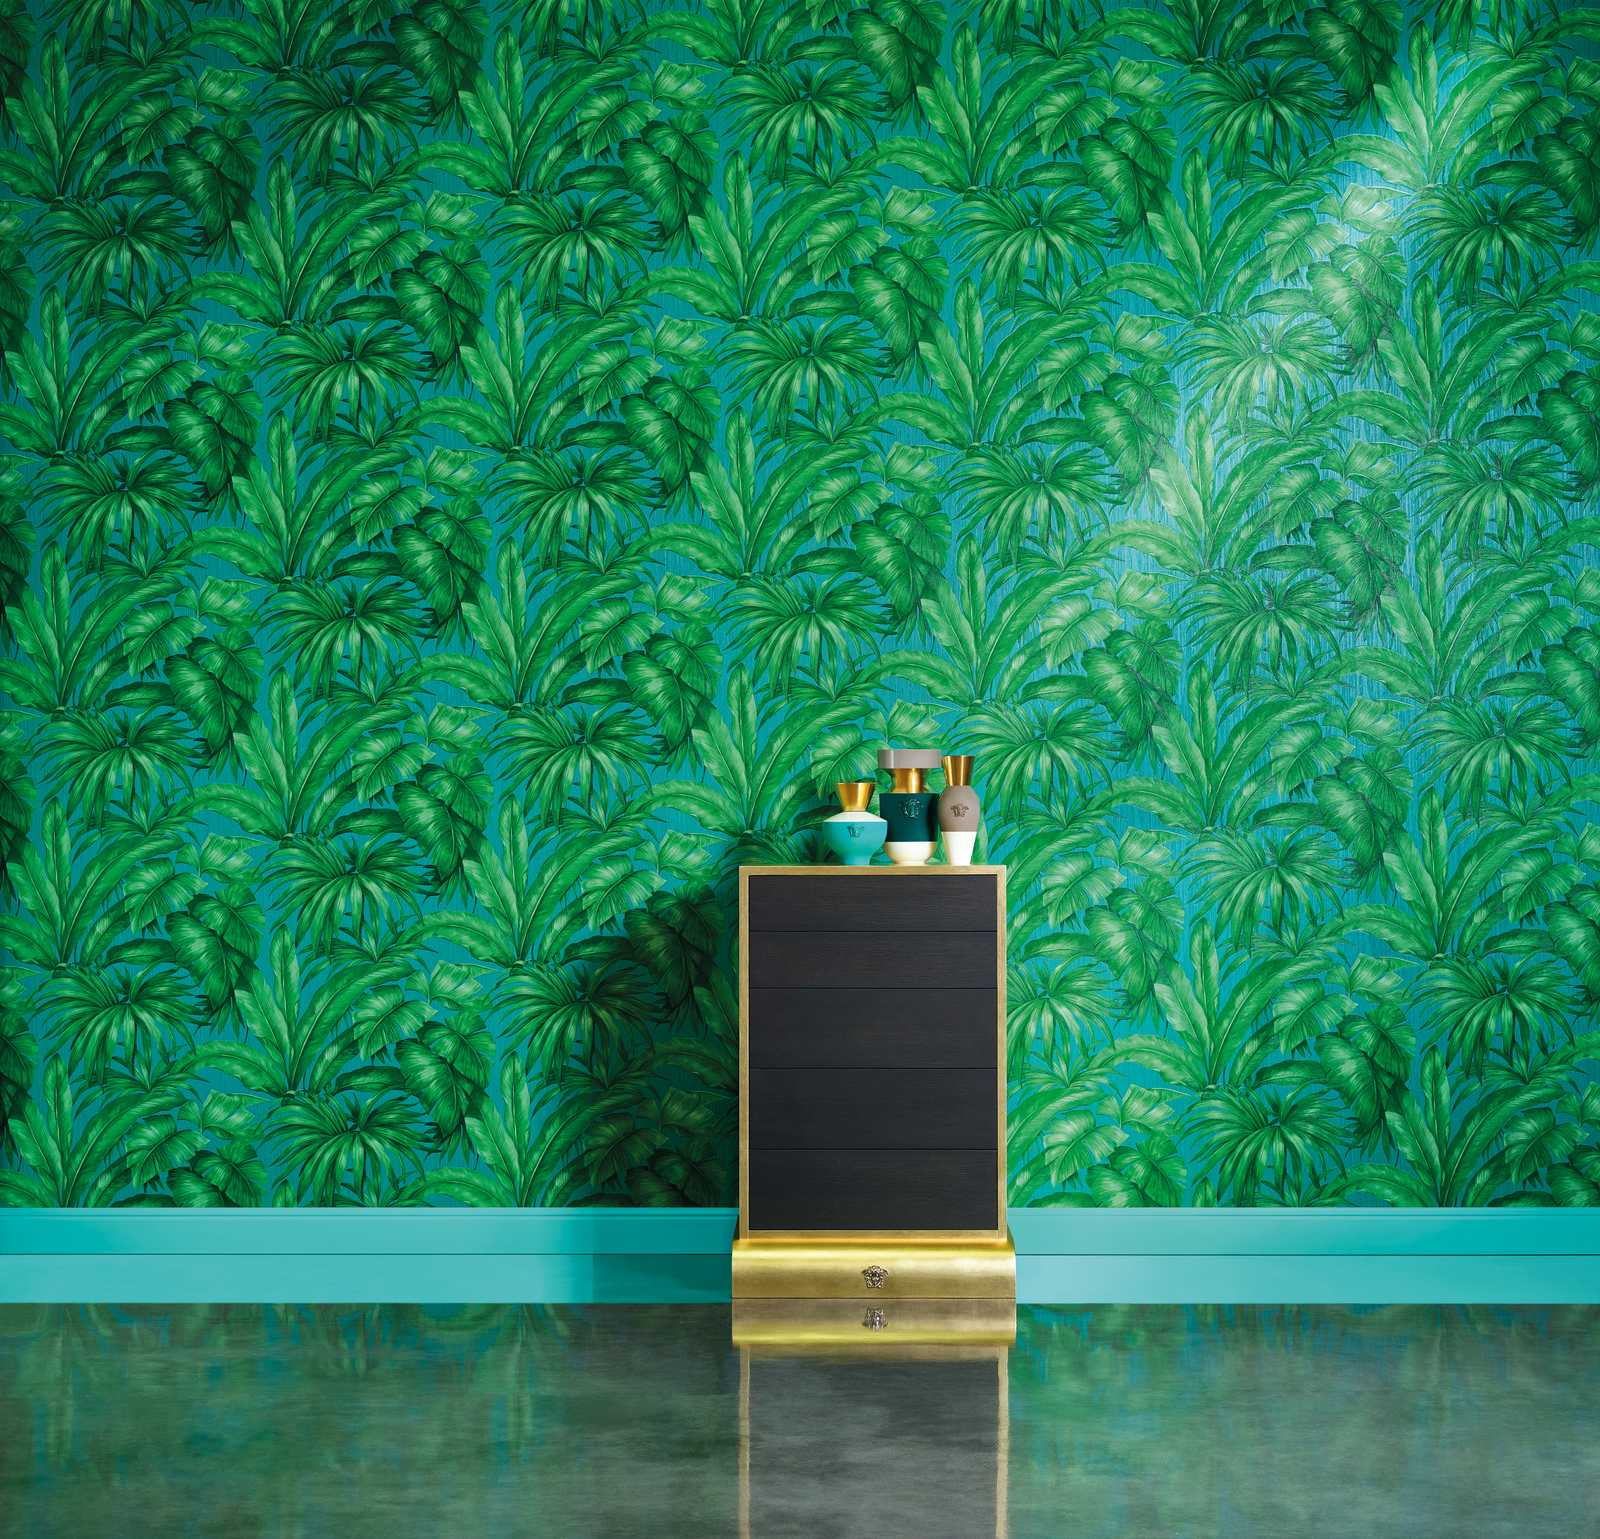             Papel pintado VERSACE selva con motivo de hojas de palmera - verde
        